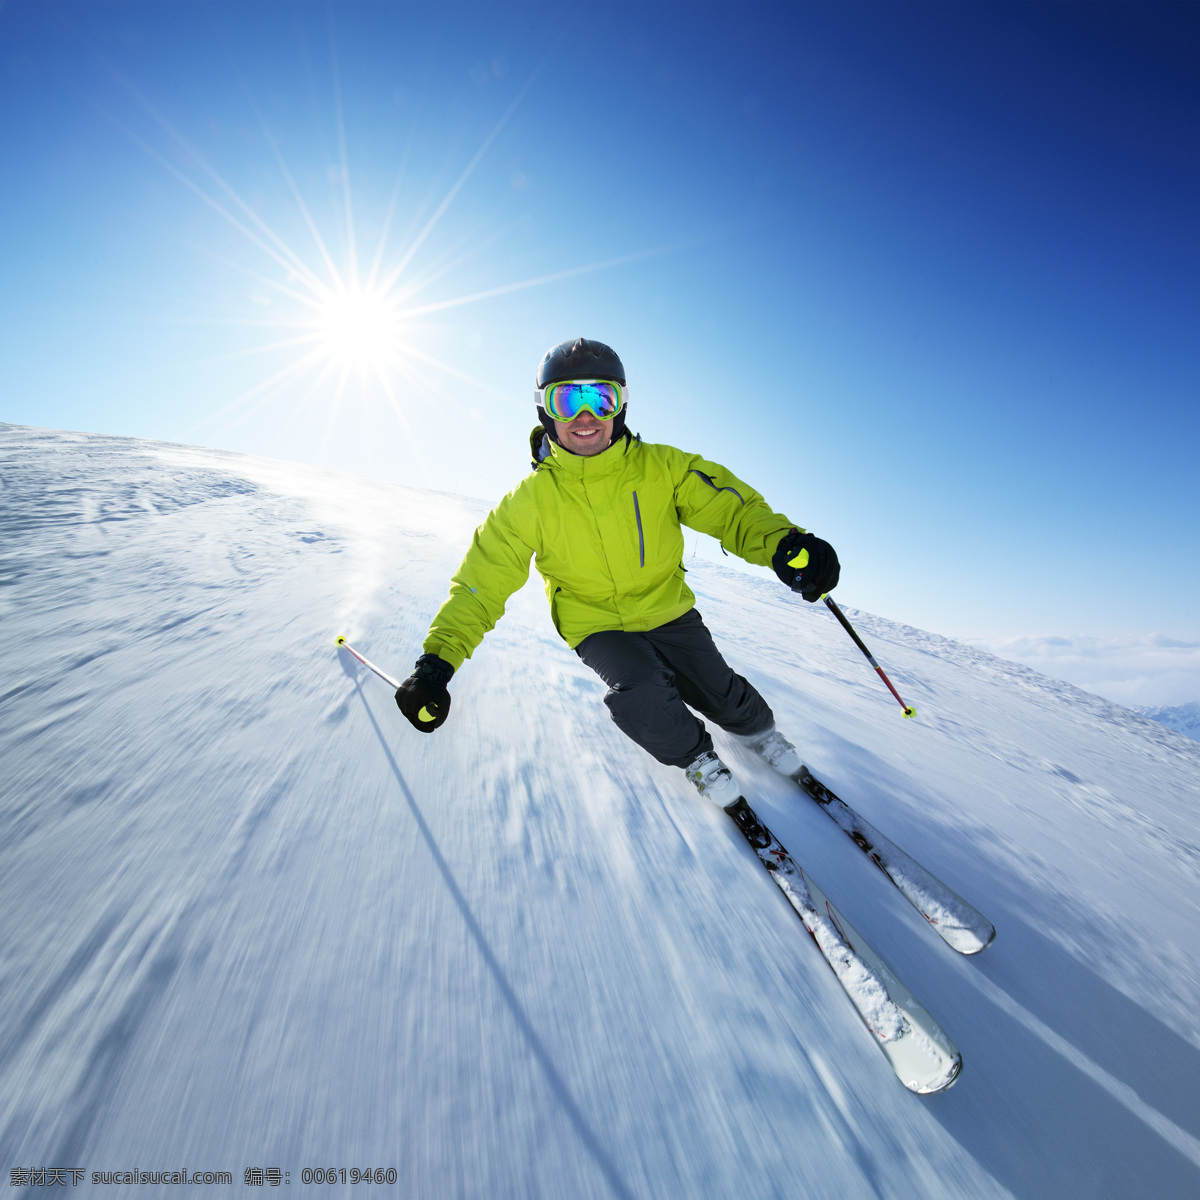 高山滑雪 滑雪 雪山 雪地 雪景 积雪 滑板 单板滑雪 滑雪运动 户外运动 冬季运动 体育运动 文化艺术